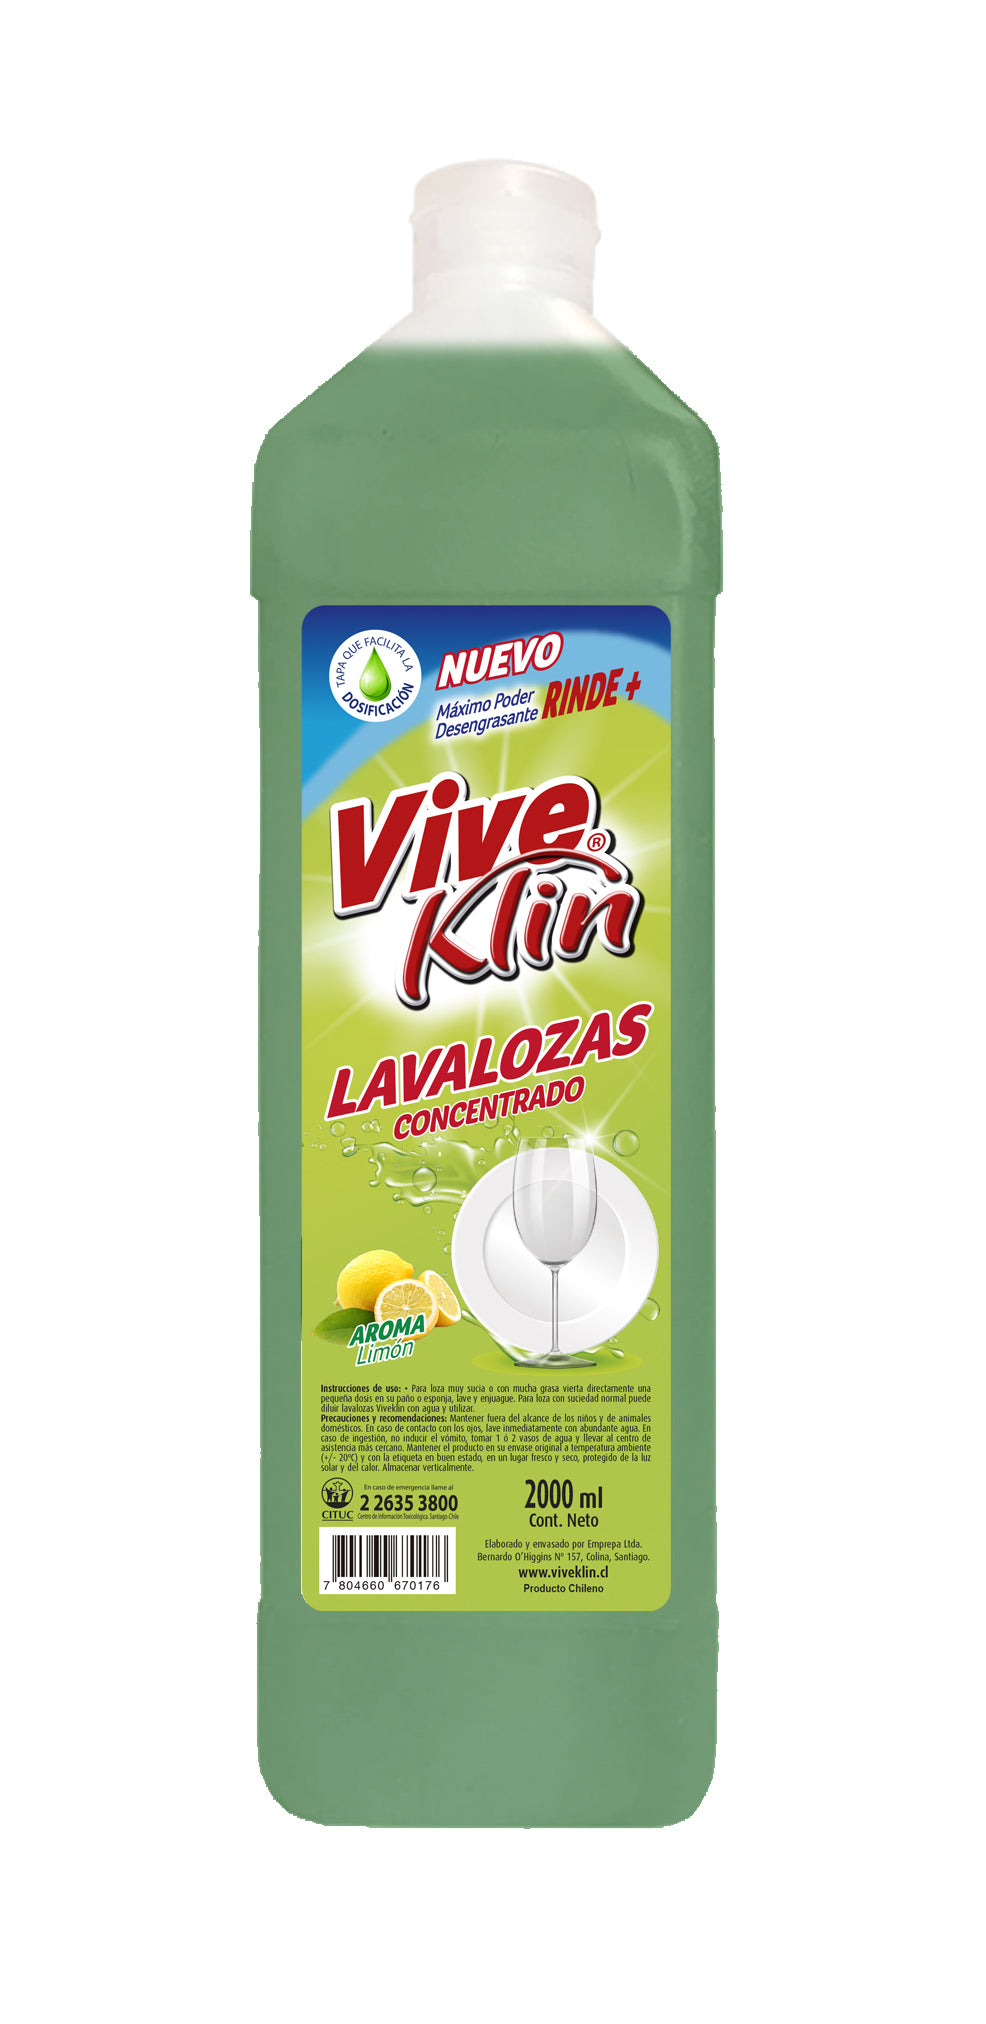 Lavaloza Limon 2 lts. Viveklin